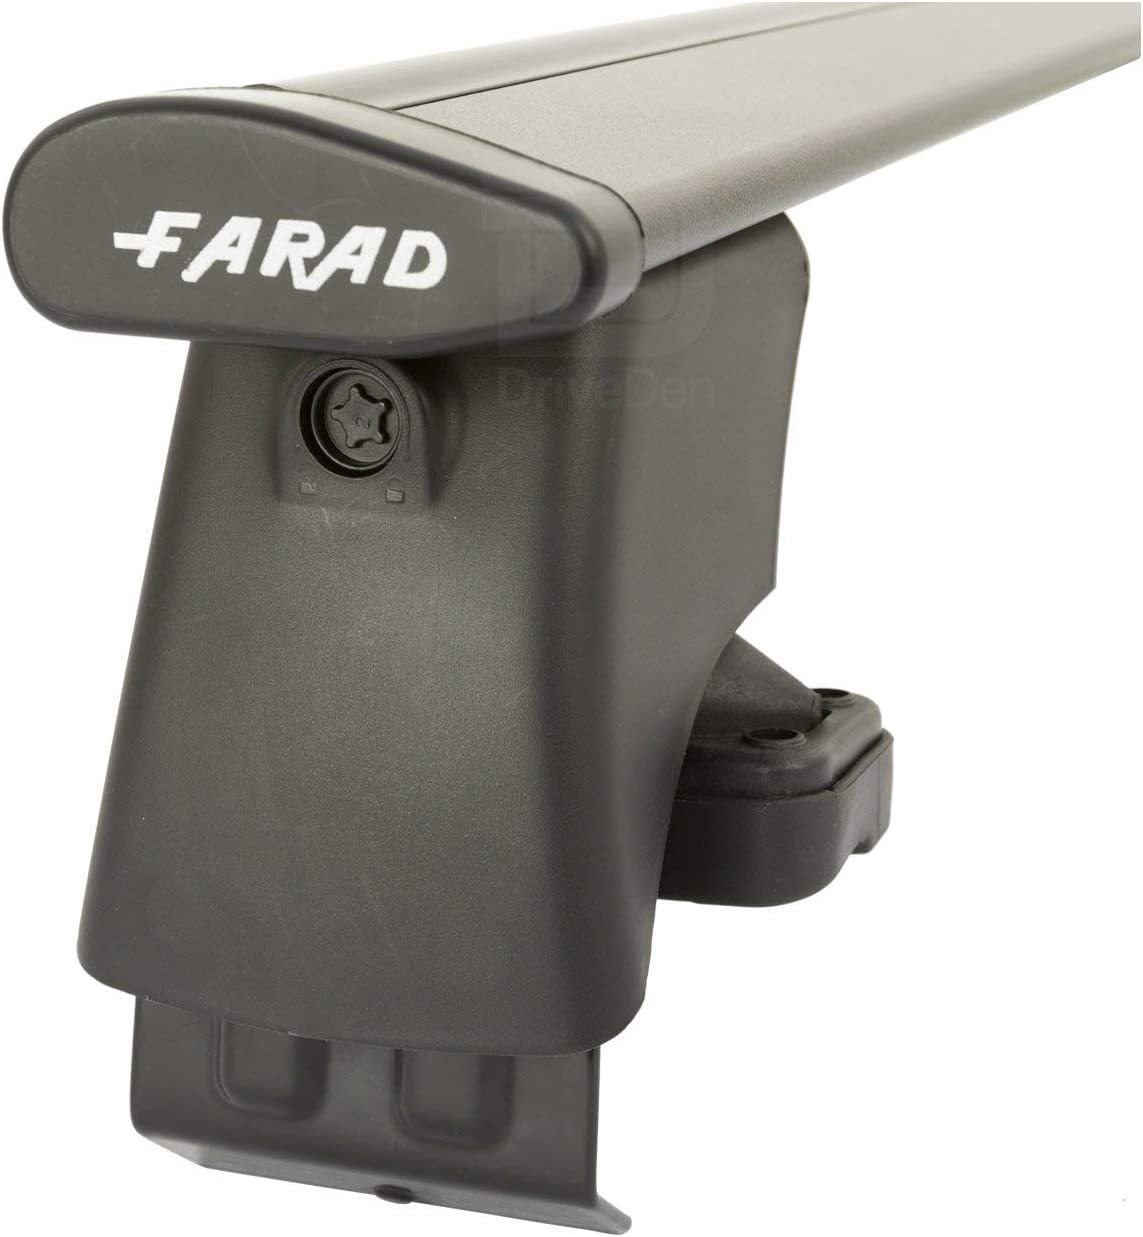 FARAD-Kit H2 per barre portatutto - Chevrolet Cruze Hatchback 2009-2015 (senza corrimano)